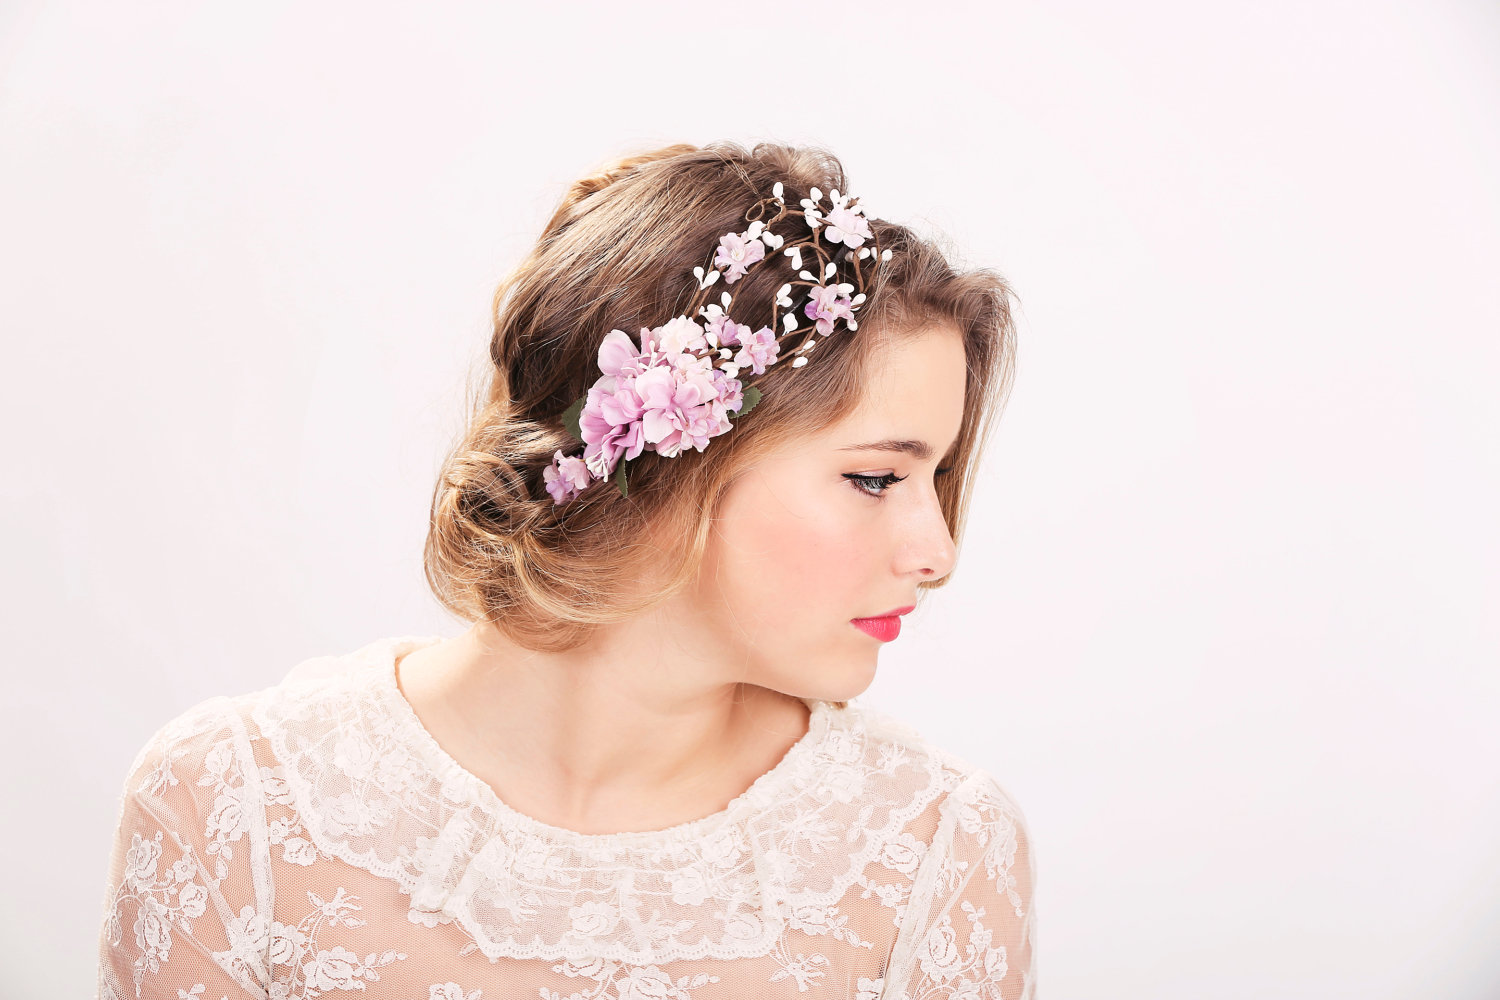 Flower girl wedding accessories